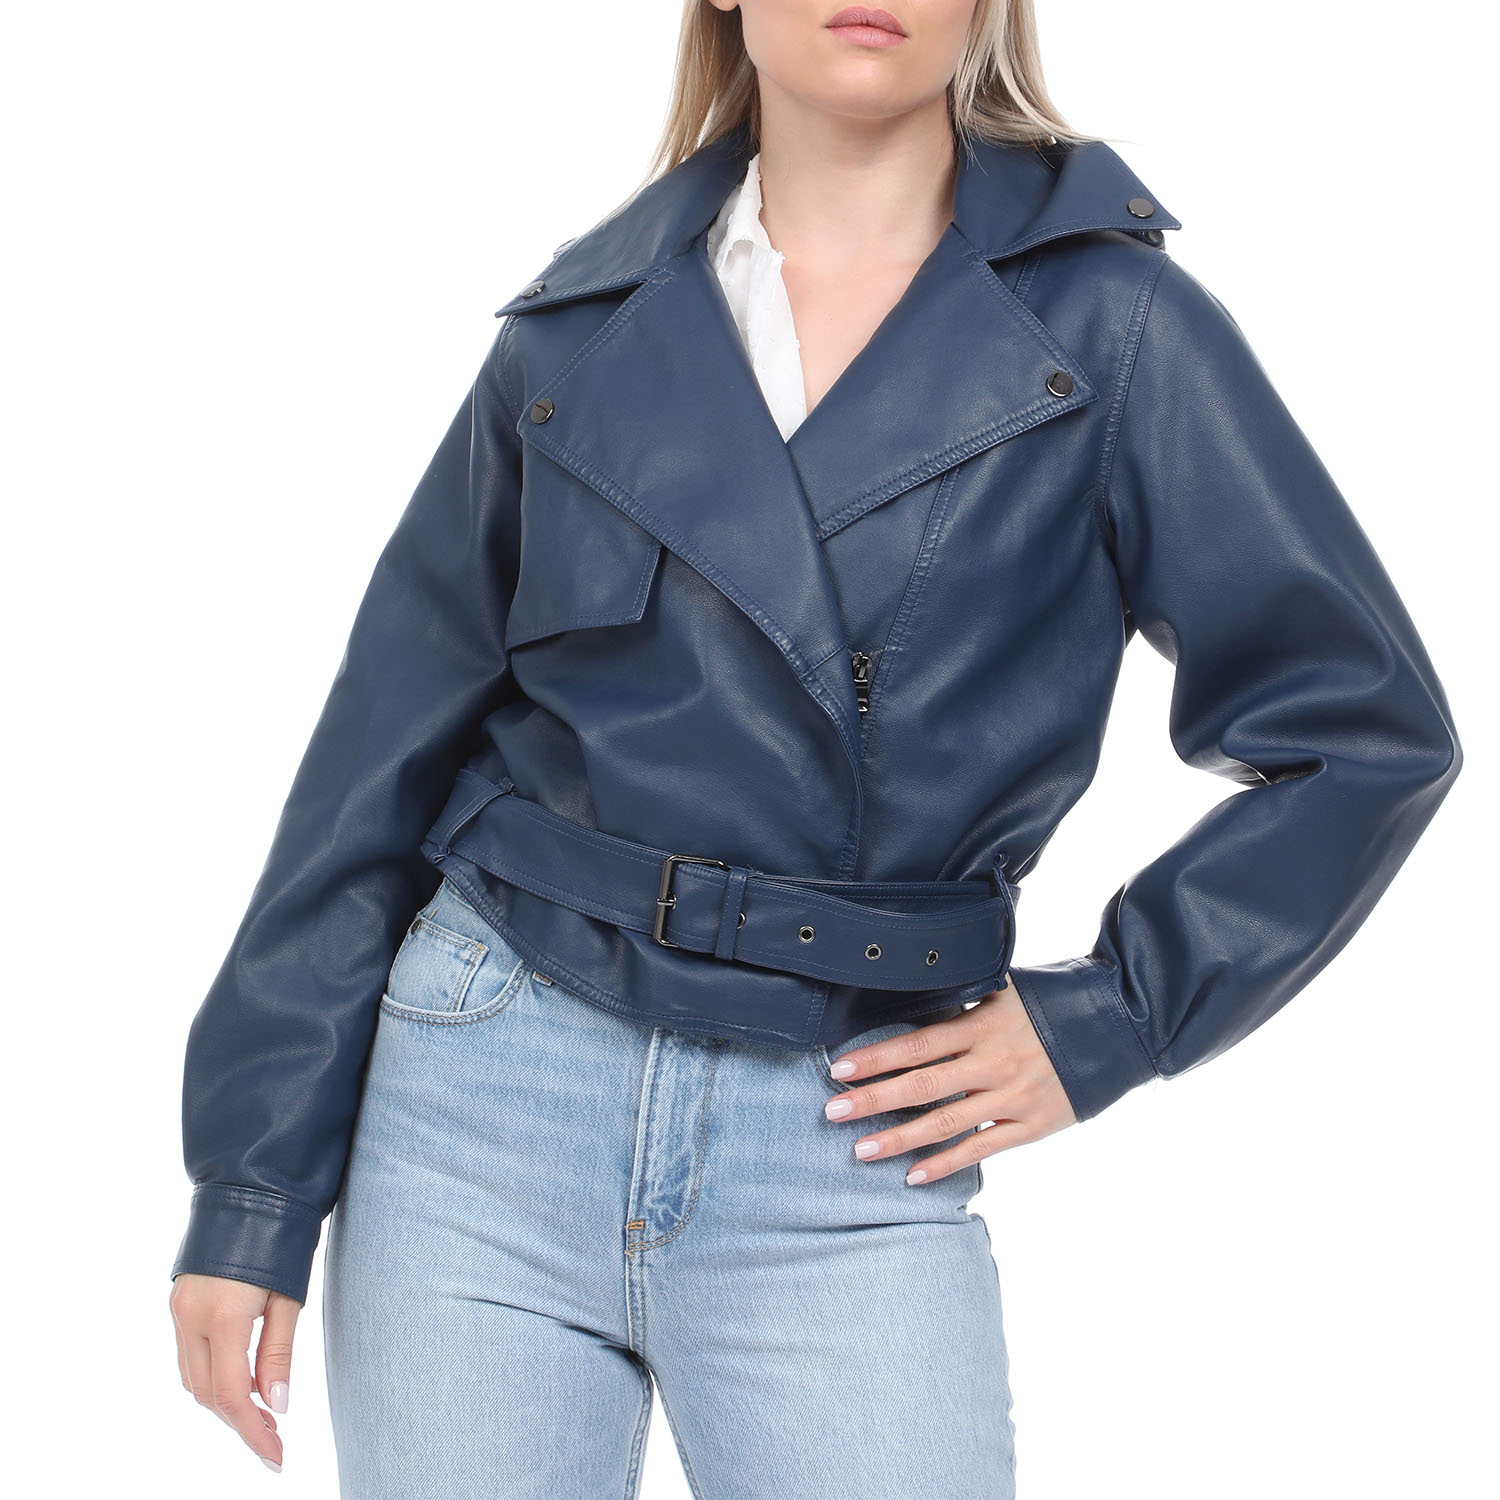 Γυναικεία/Ρούχα/Πανωφόρια/Τζάκετς 'ALE - Γυναικείο jacket 'ALE μπλε